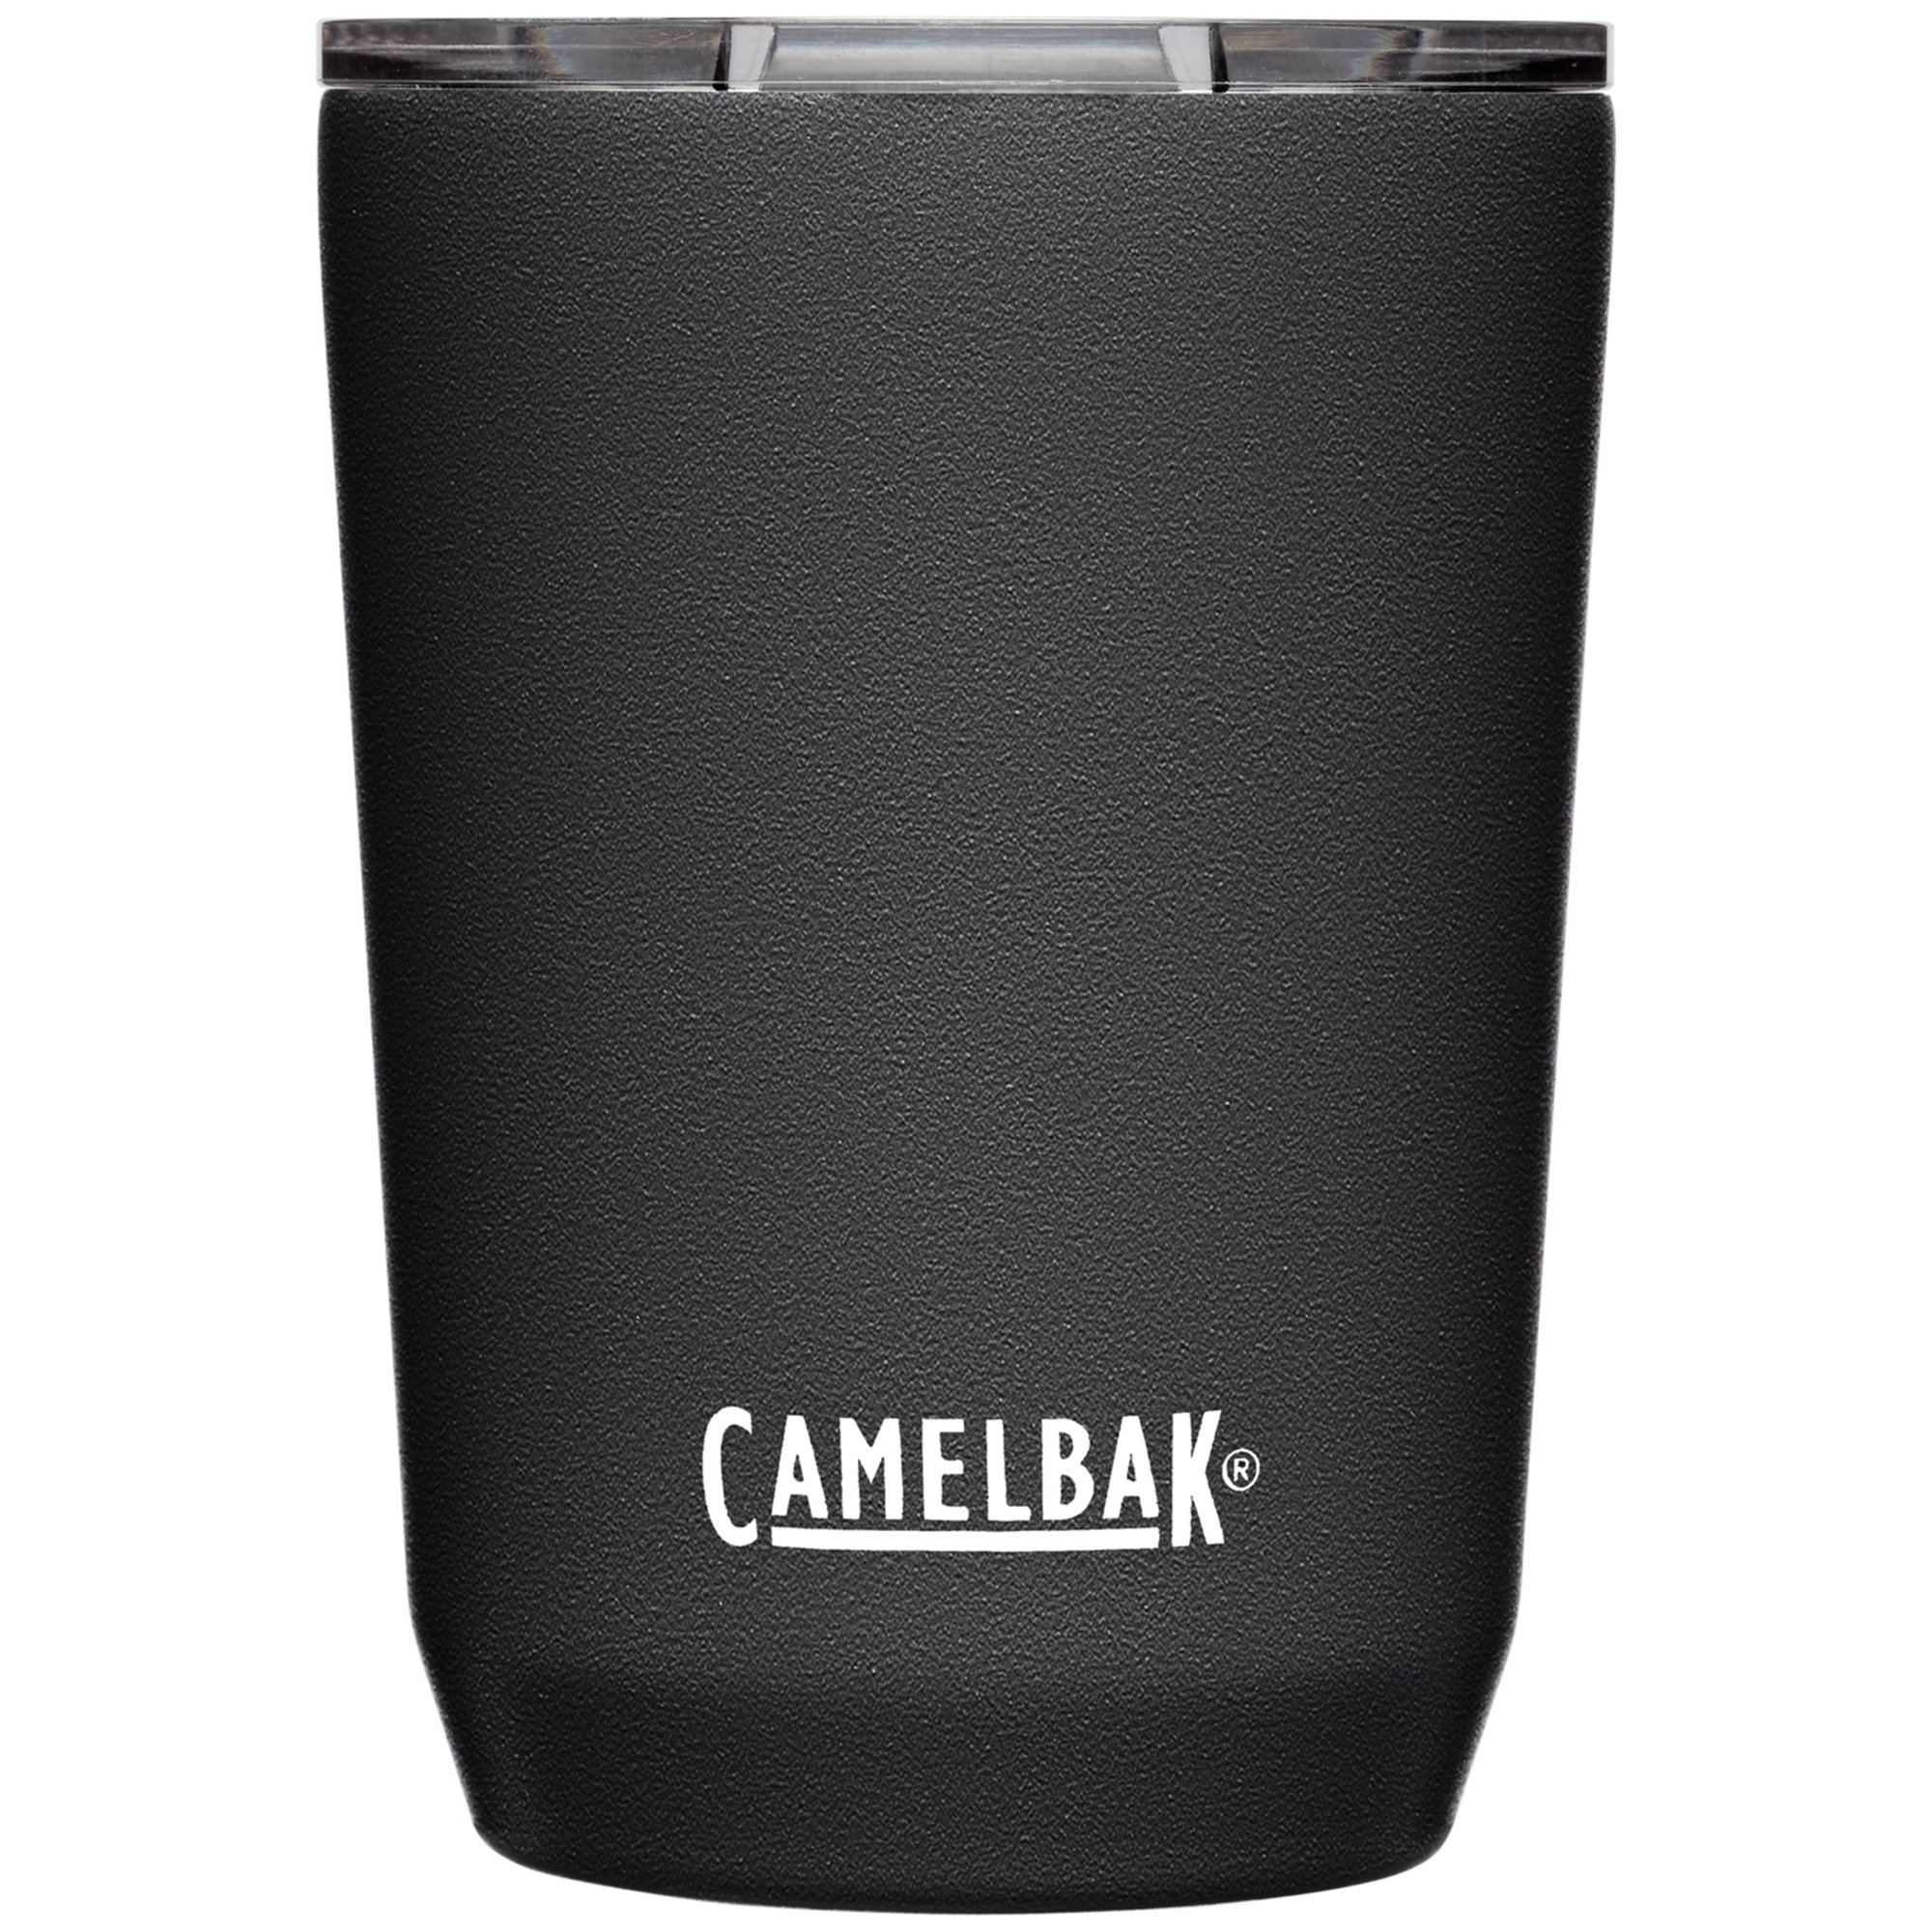 Camelbak Tumbler termosmugg 0,35 liter black